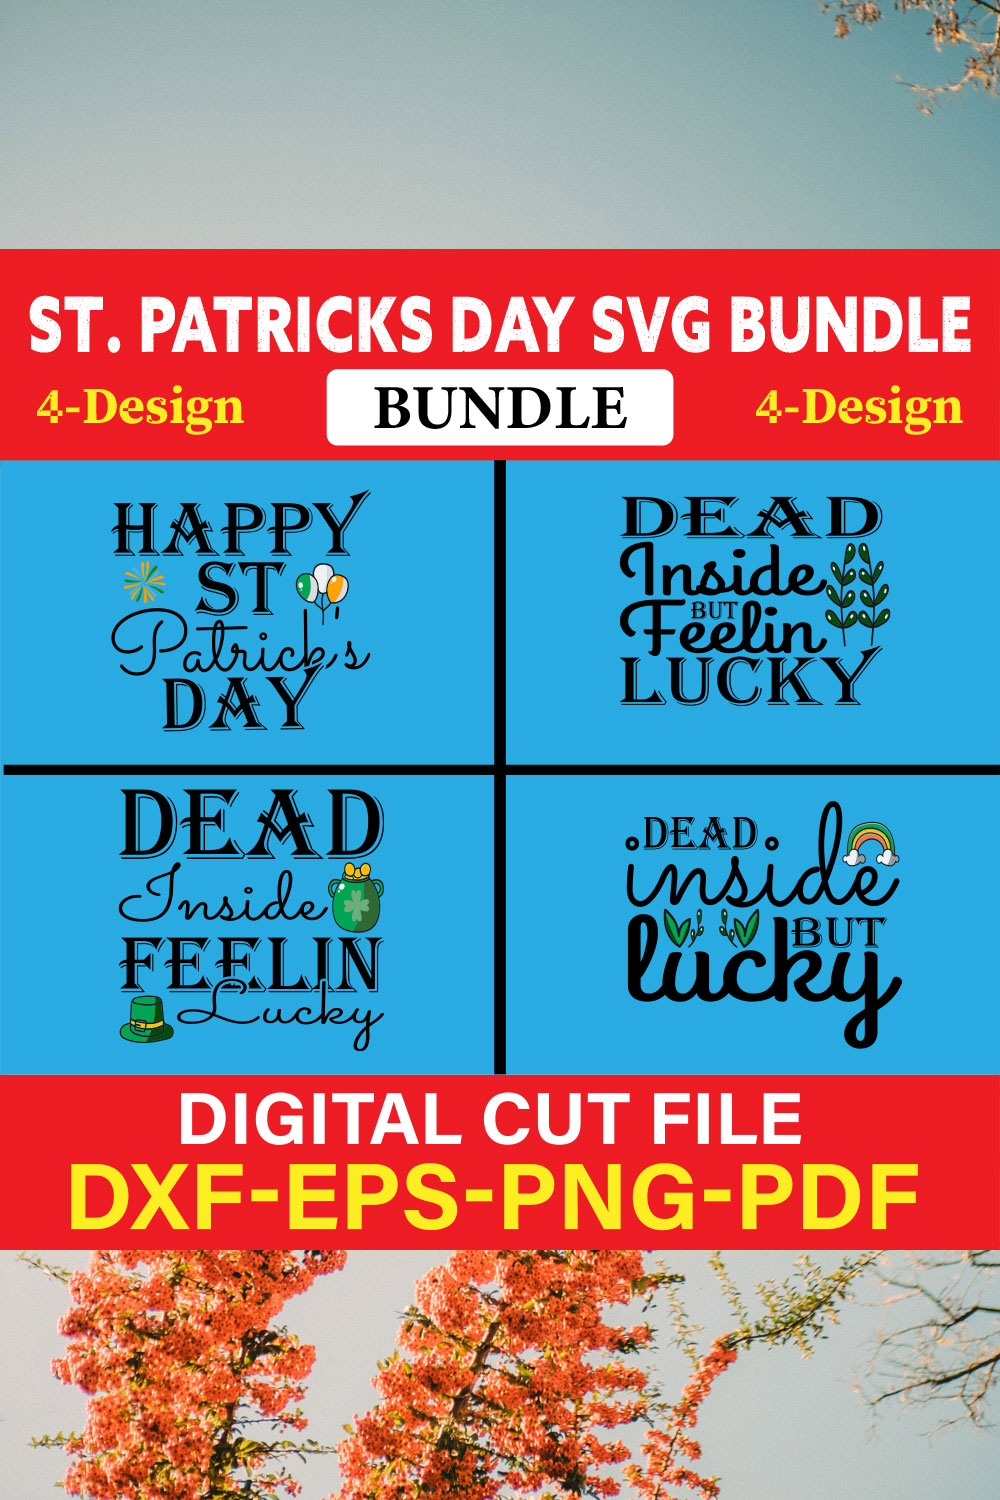 St Patrick's Day T-shirt Design Bundle Vol-16 pinterest preview image.